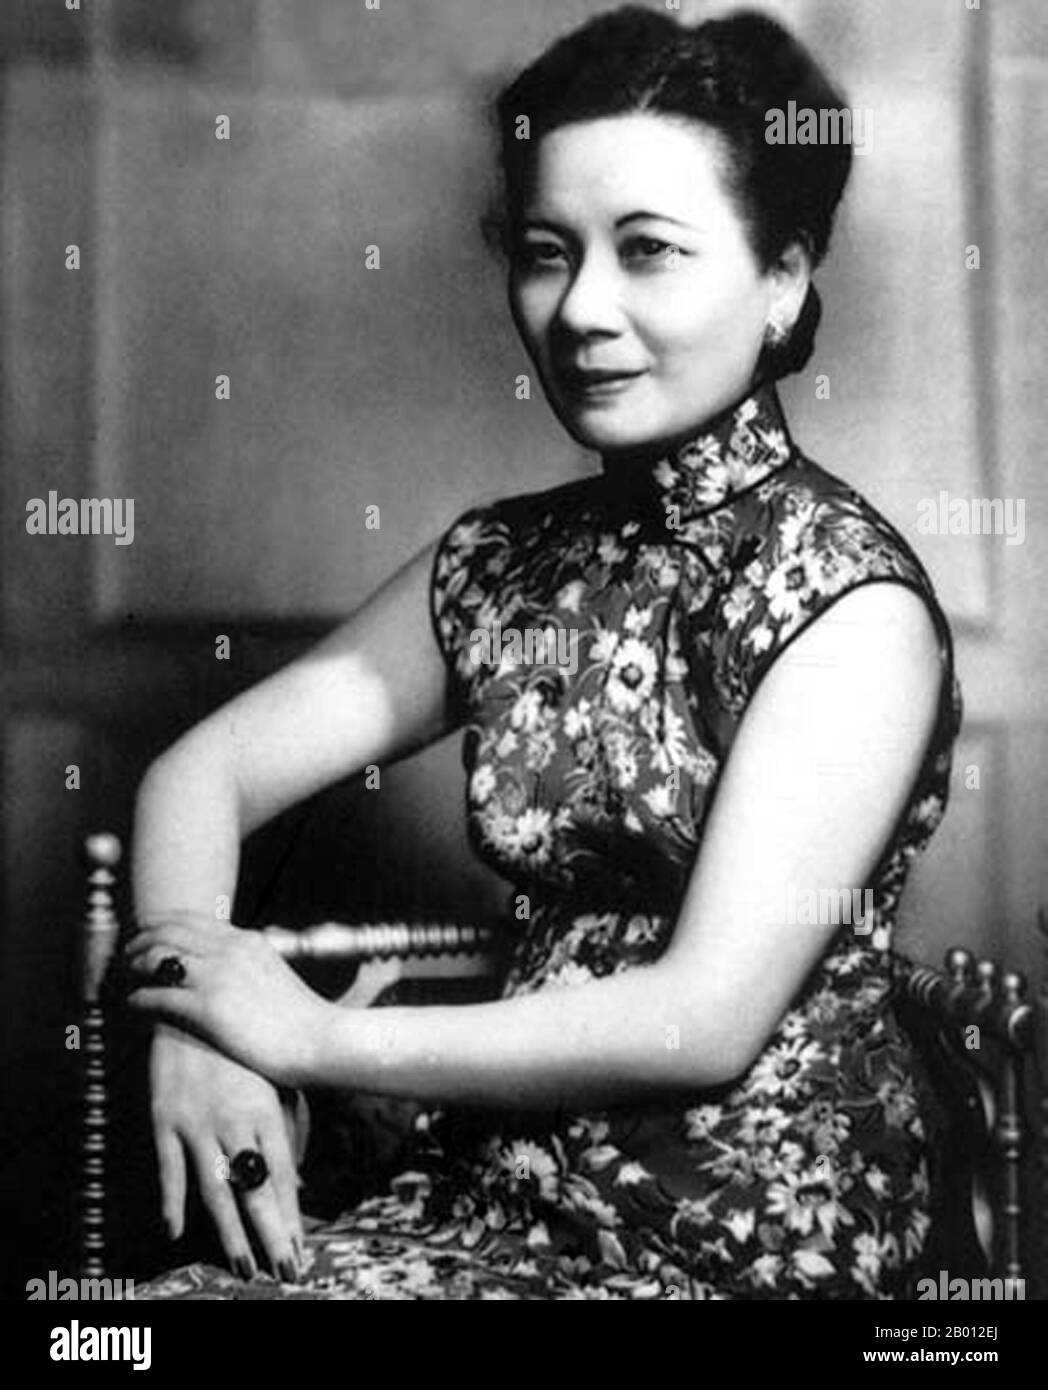 Cina: Soong May-ling o Mei-ling, conosciuto anche come Madame Chiang Kai-shek (Song Meiling, 1898-2003), First Lady of the Republic of China (ROC) e moglie del presidente Chiang Kai-shek, 1940. Soong May-ling o Mei-ling, conosciuto anche come Madame Chiang Kai-shek (Song Meiling, 1898-2003), First Lady of the Republic of China (ROC) e moglie del presidente Chiang Kai-shek. Era una politico e una pittrice. La più giovane e l'ultima sopravvissuta delle tre suore Soong, ha svolto un ruolo di primo piano nella politica della Repubblica di Cina ed è stata la sorella in legge del presidente Sun Yat-sen, fondatore della RDC. Foto Stock